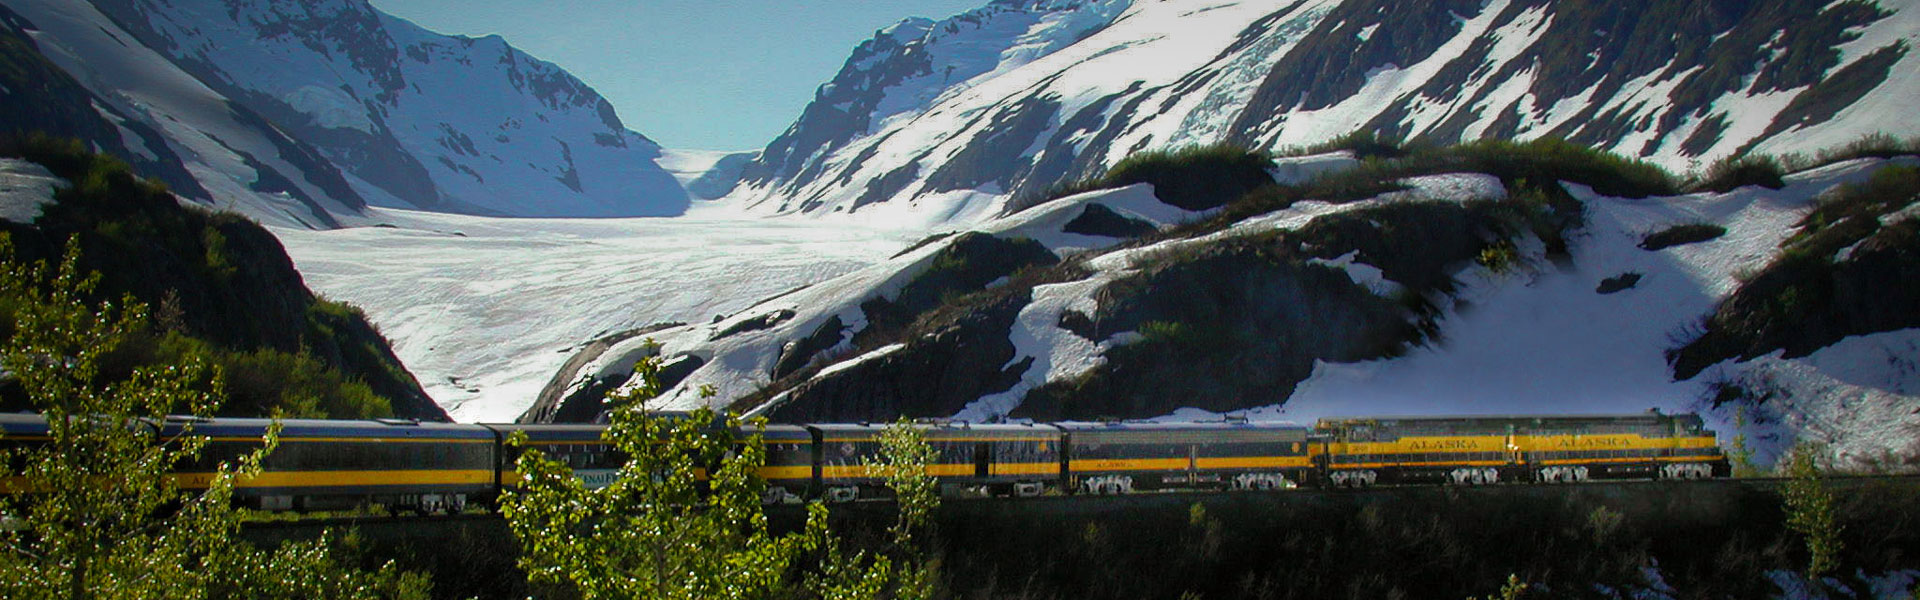 Alaska Rail Tours | Best Alaska Rail Trips & Vacations